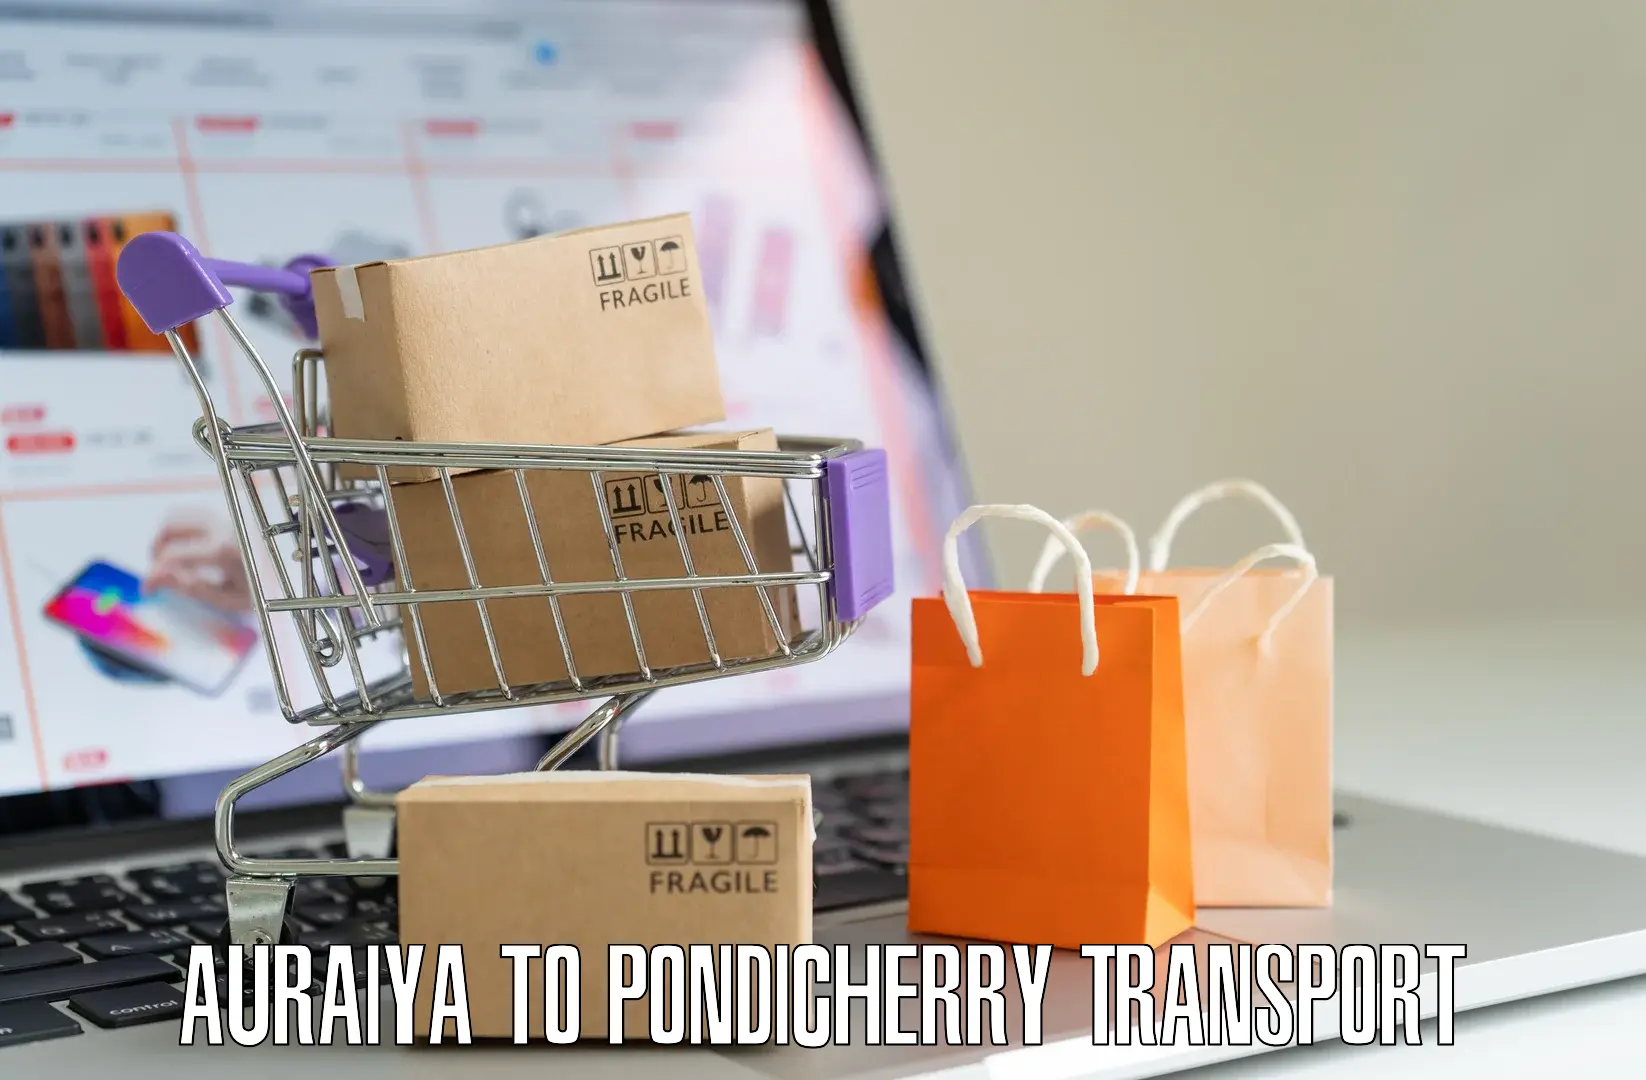 Transport shared services Auraiya to Pondicherry